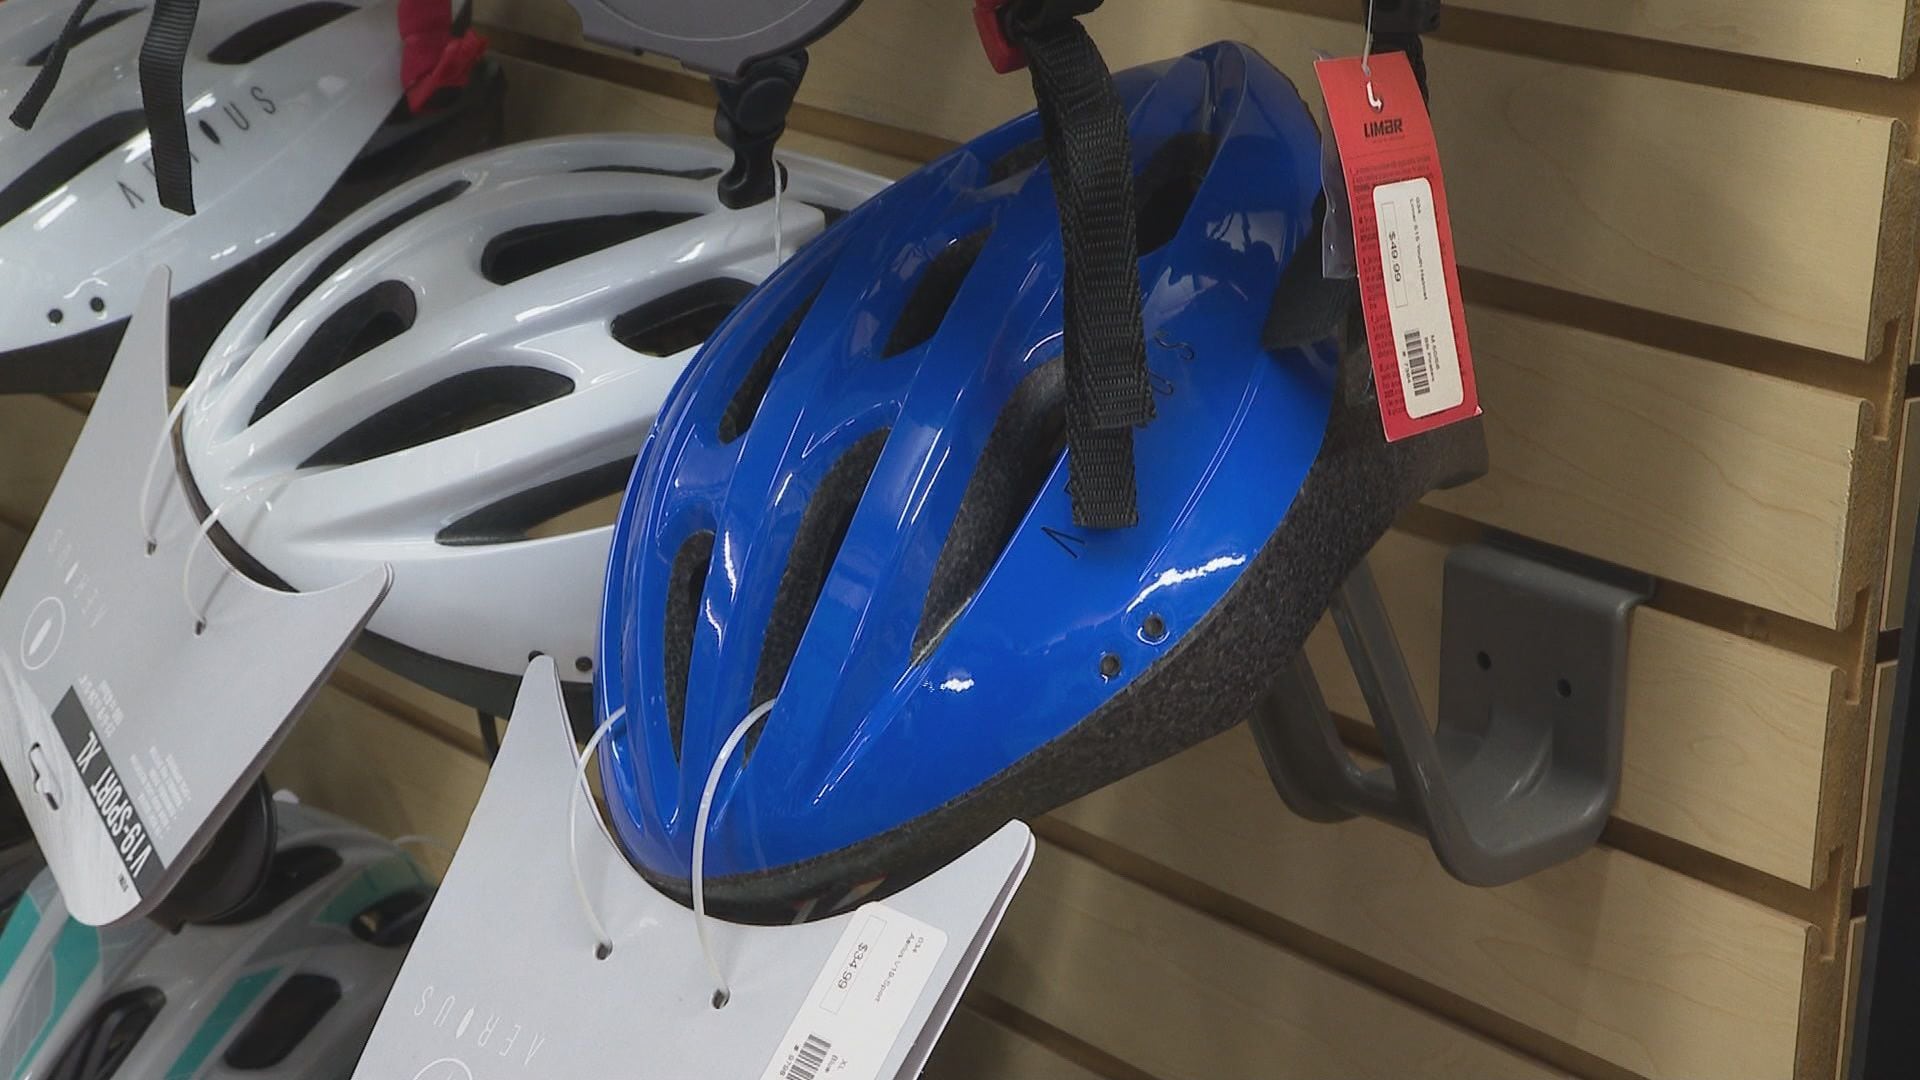 NCDOT Bicycle Helmet Initiative to begin soon [Video]